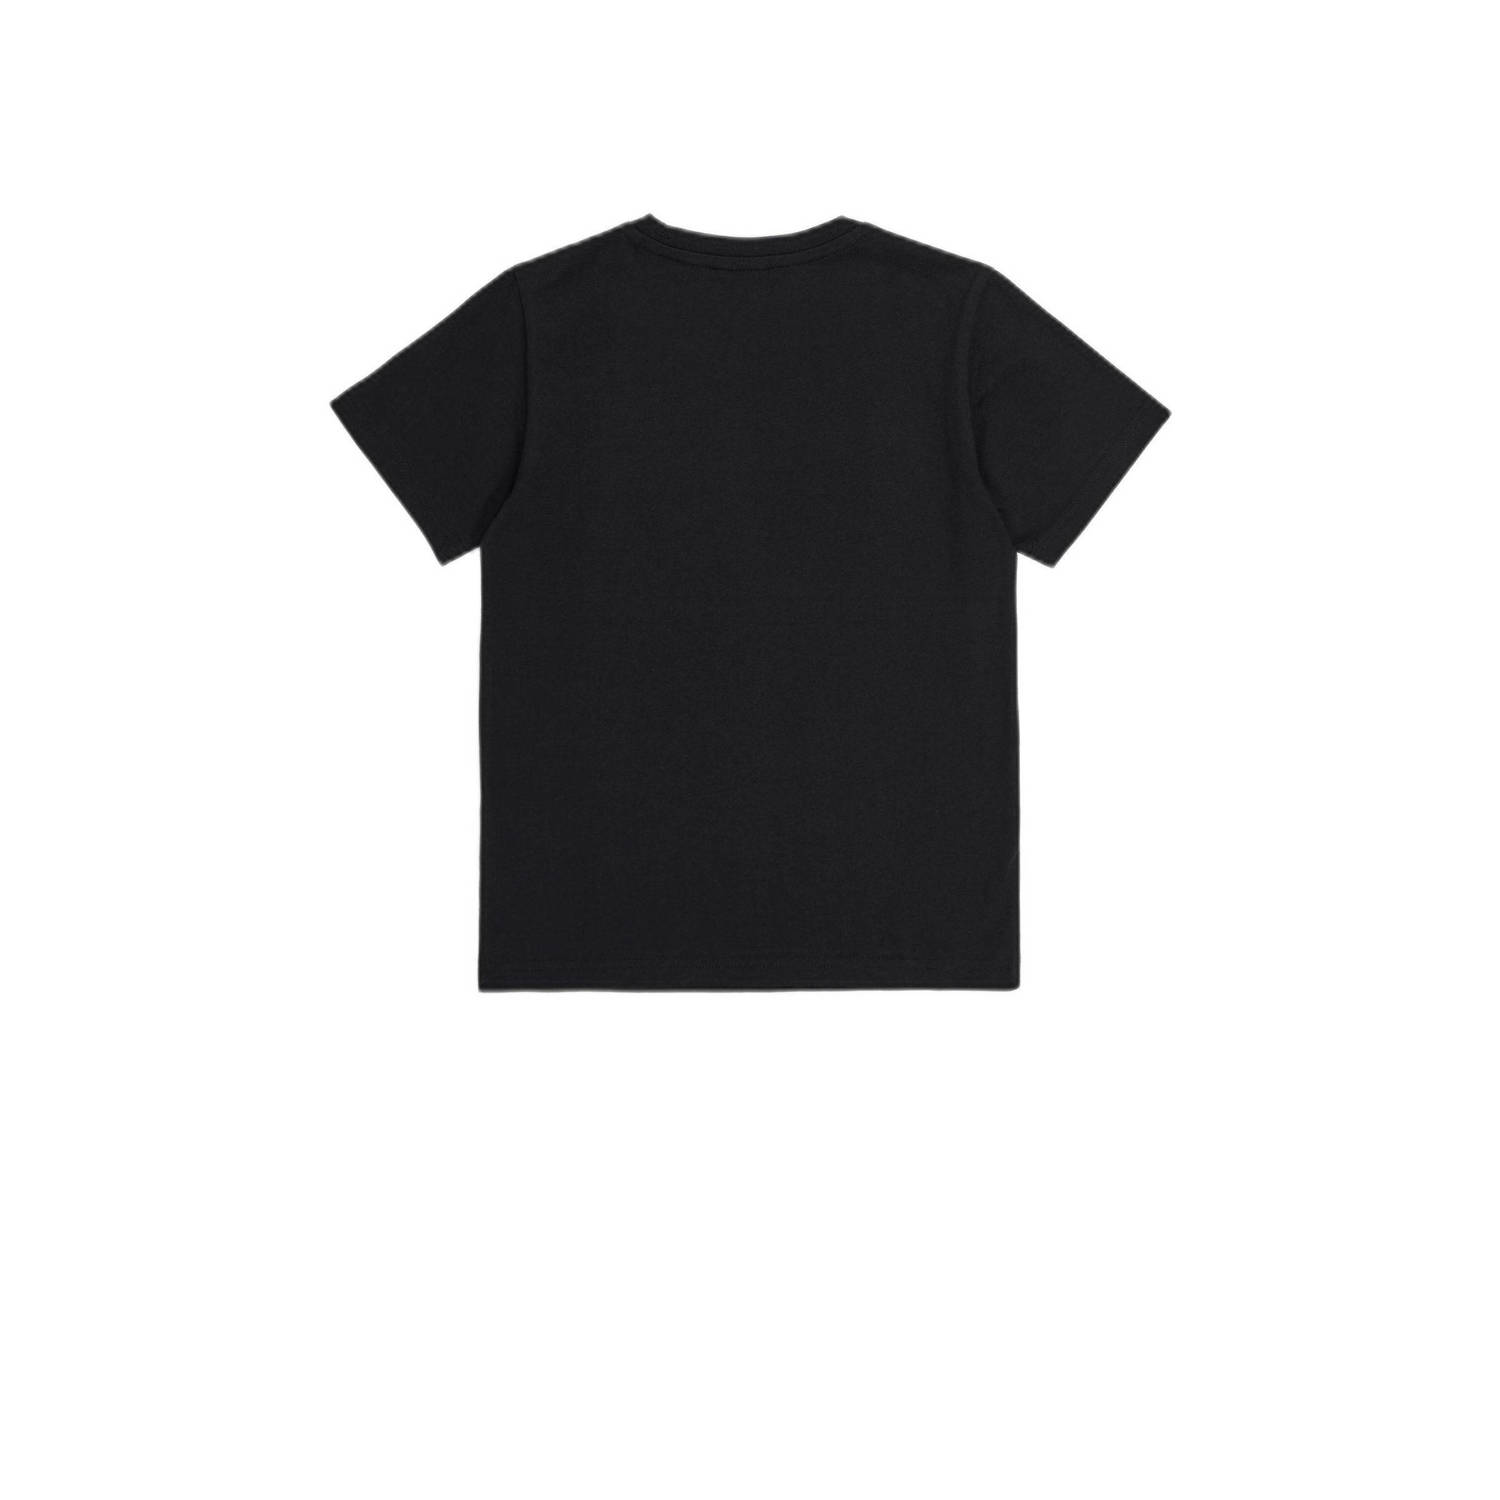 Champion T-shirt met logo zwart